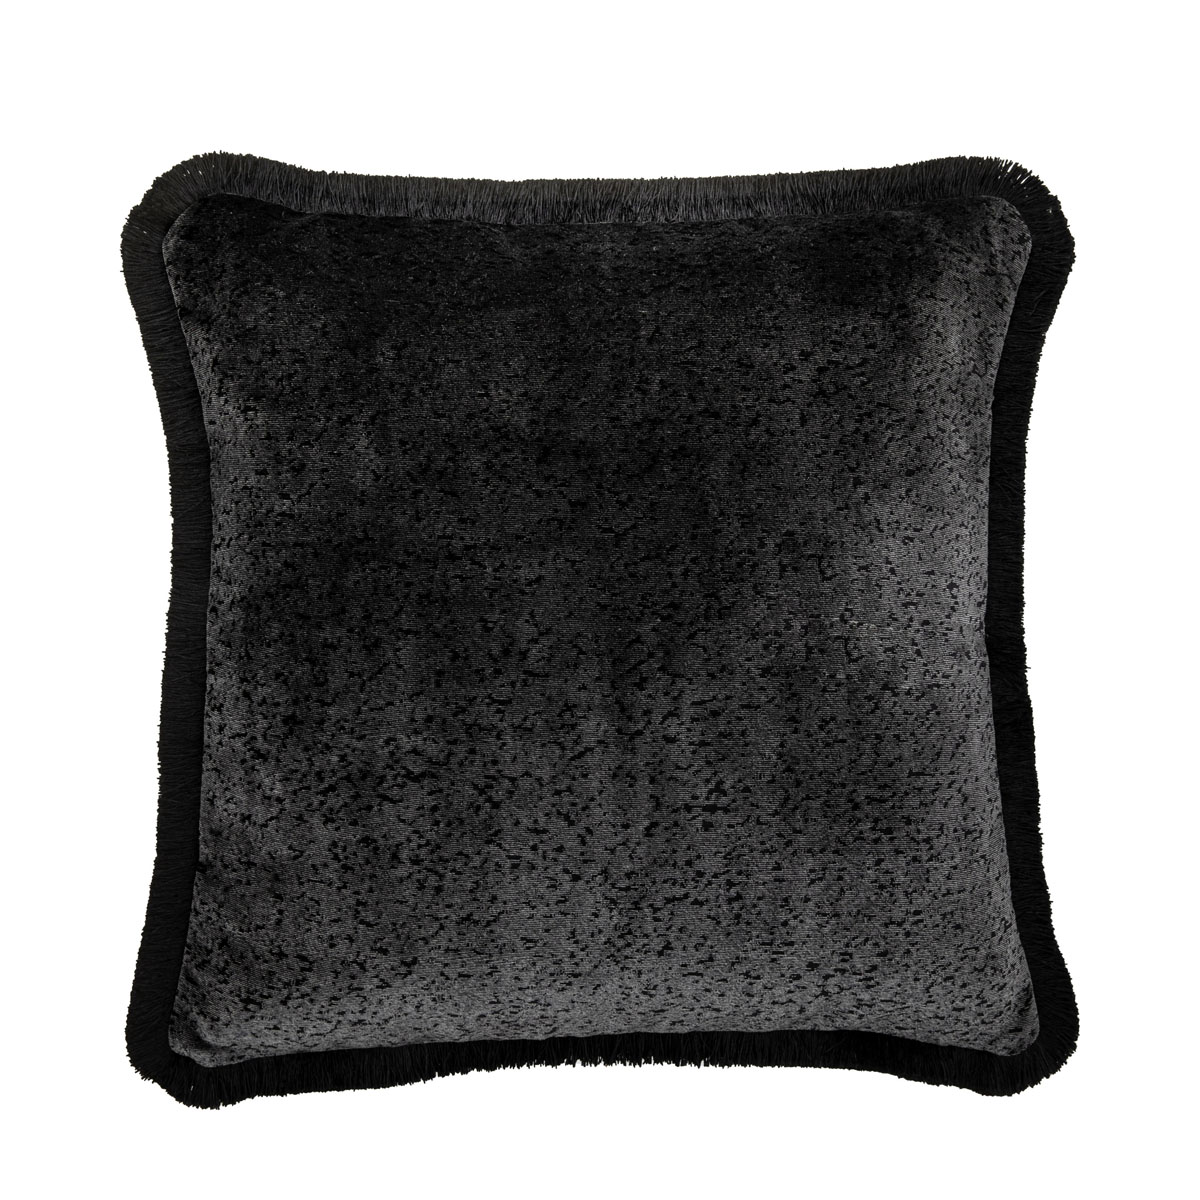 Cairo Cushion Cover Black 500x500mm